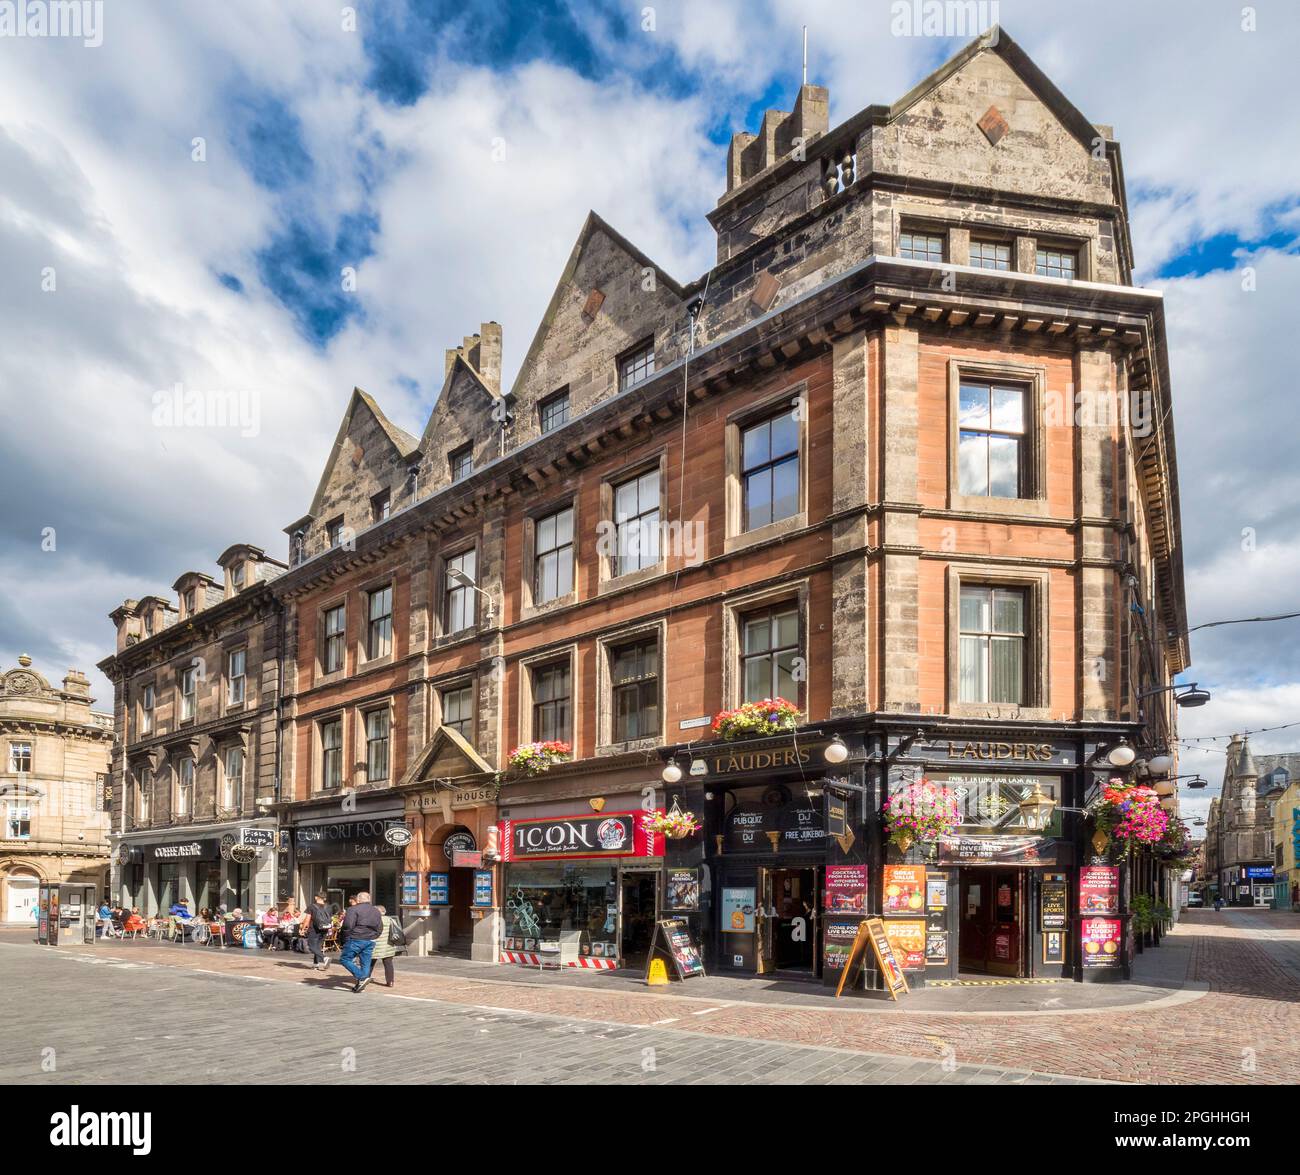 5 septembre 2022 : Inverness, Highland, Écosse - scène de rue dans Church Street, Inverness, avec pub, café pavé, boutiques, personnes. Banque D'Images